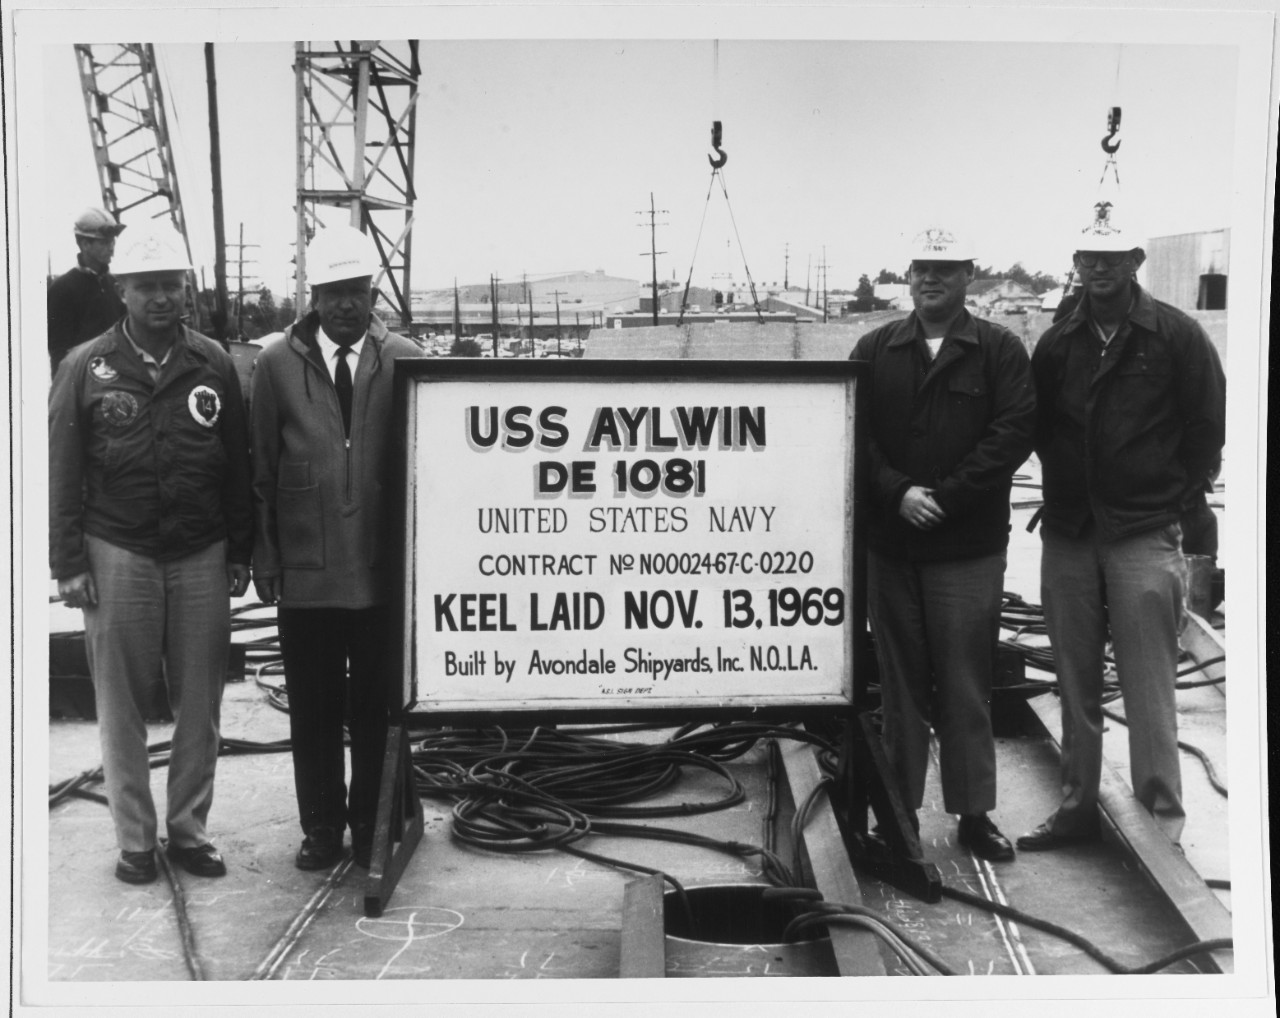 USS AYLYIN (DE-1081)